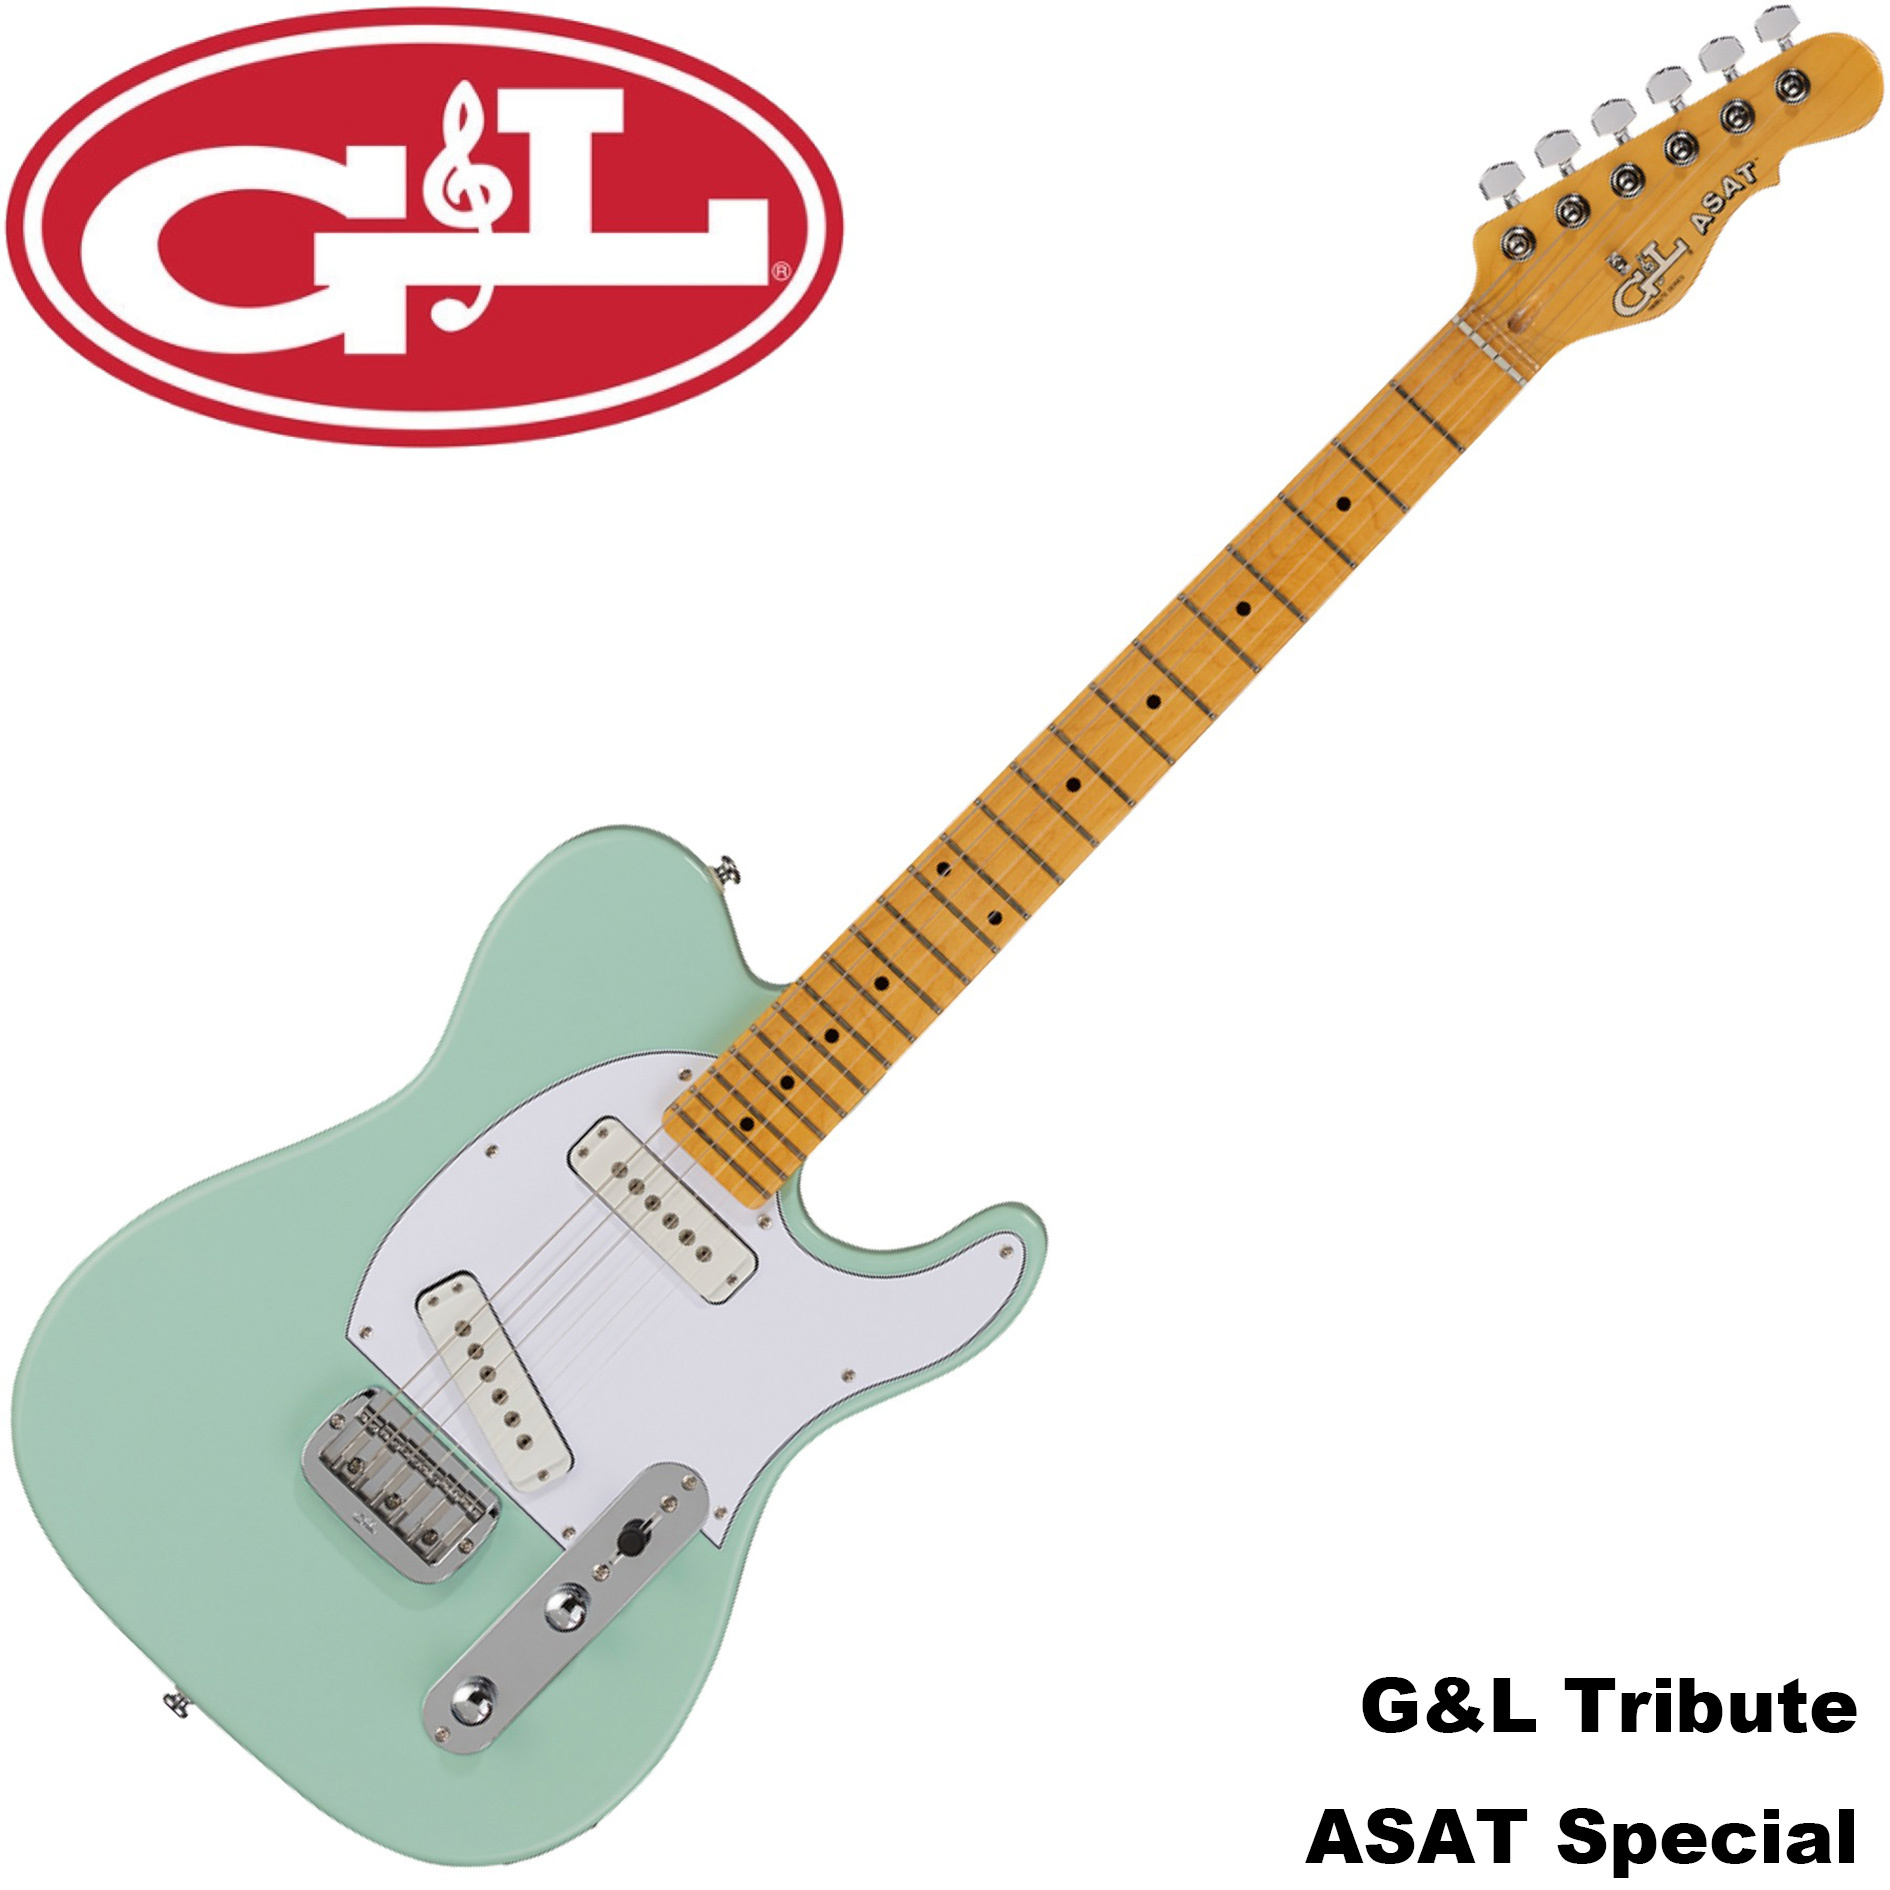 又昇樂器. 音響】無息分期G&L Tribute ASAT SPECIAL 電吉他Tele